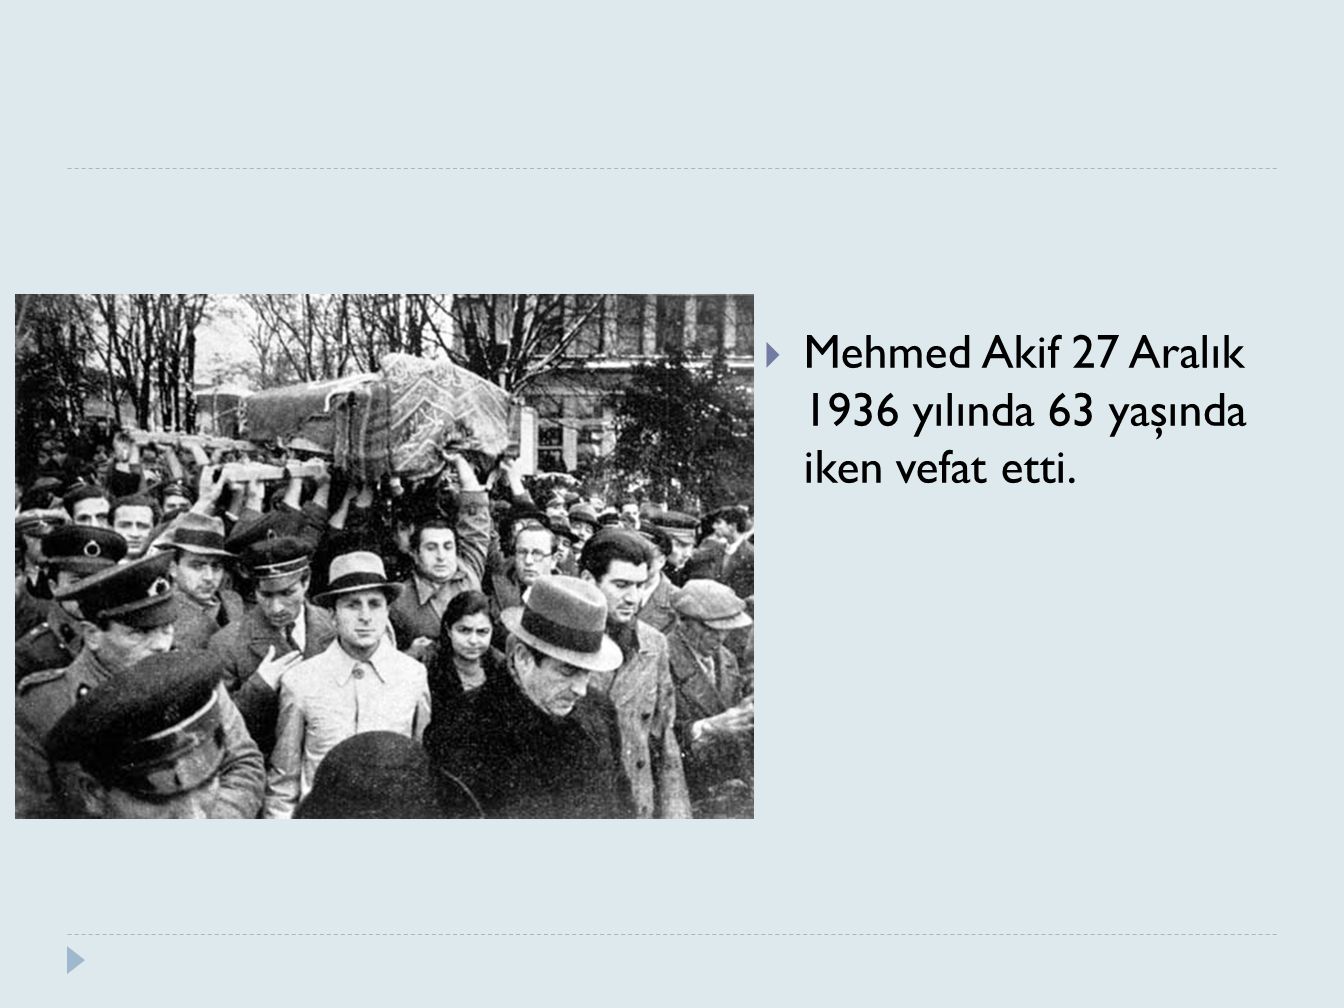 Mehmed Akif 27 Aralık 1936 yılında 63 yaşında iken vefat etti.